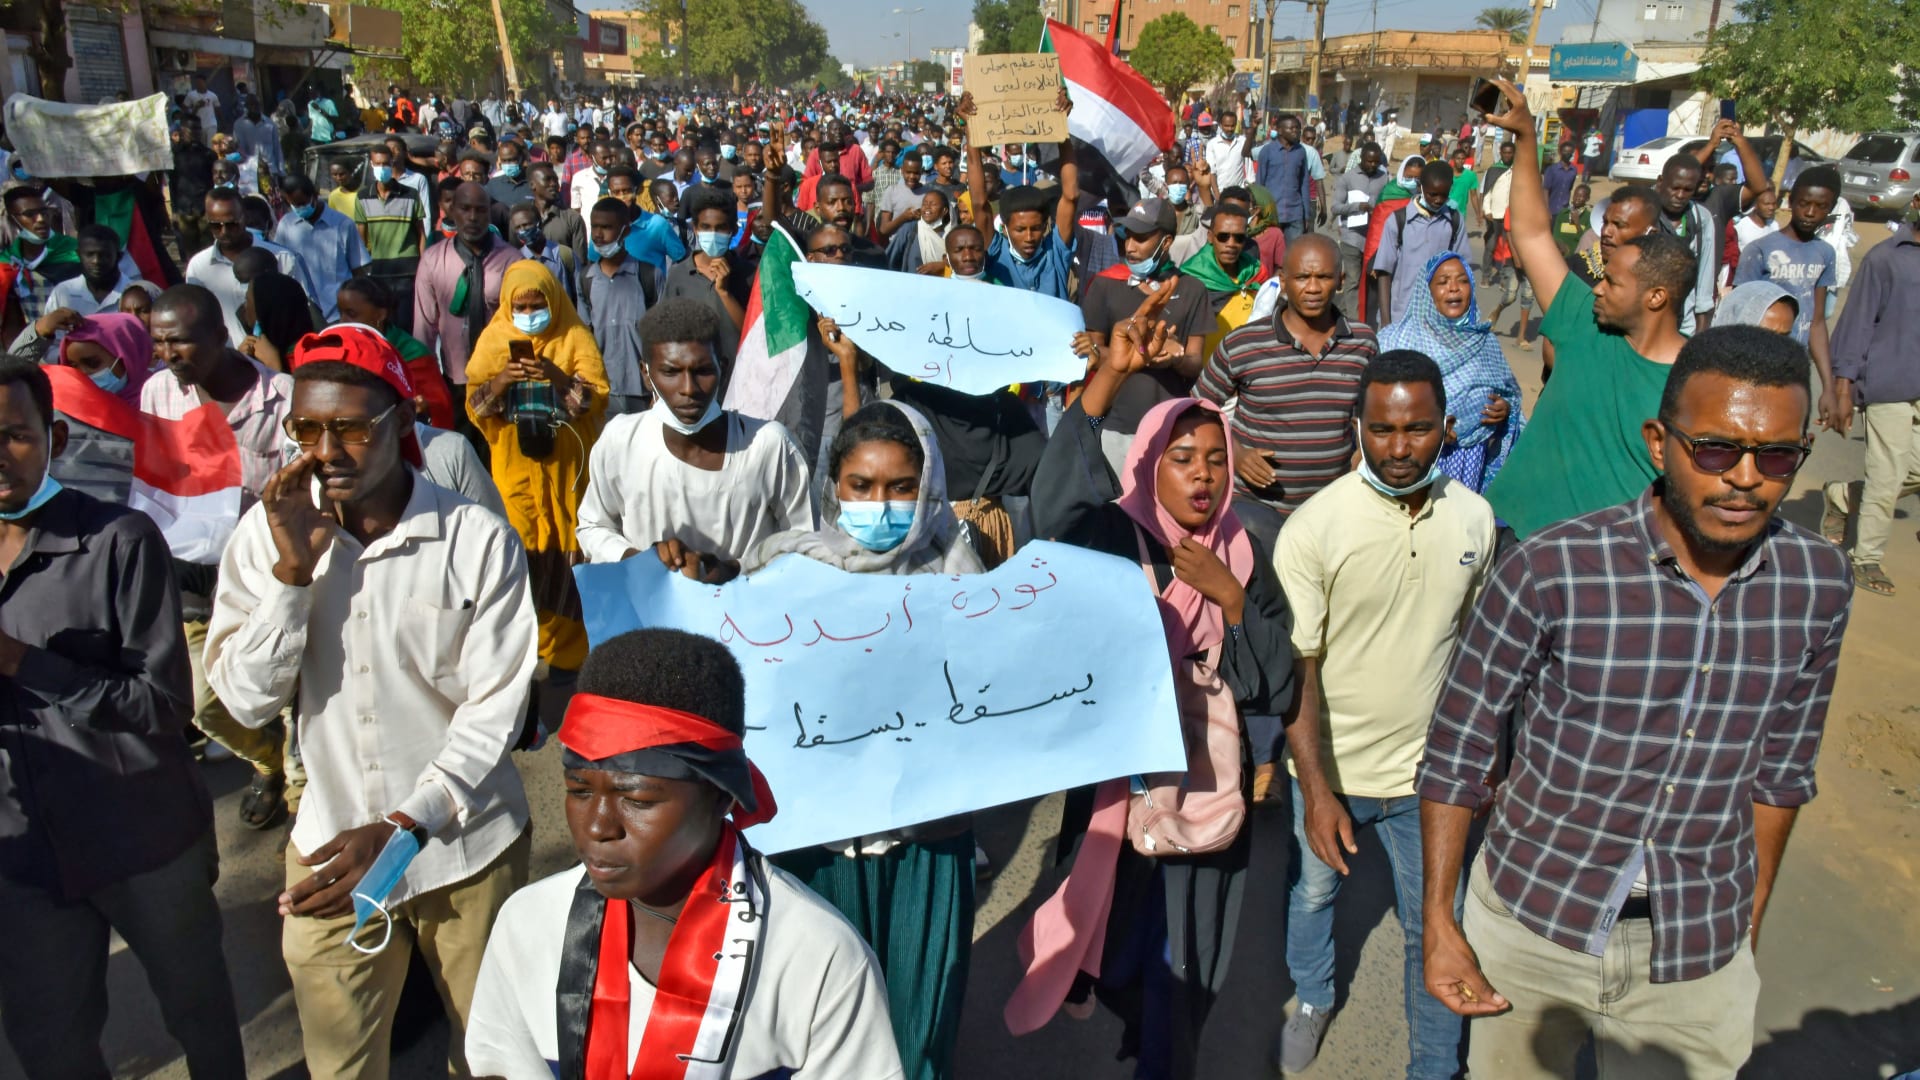 متظاهرون سودانيون يرفعون لافتات وأعلام خلال مظاهرة تطالب بعودة الحكم المدني في أم درمان